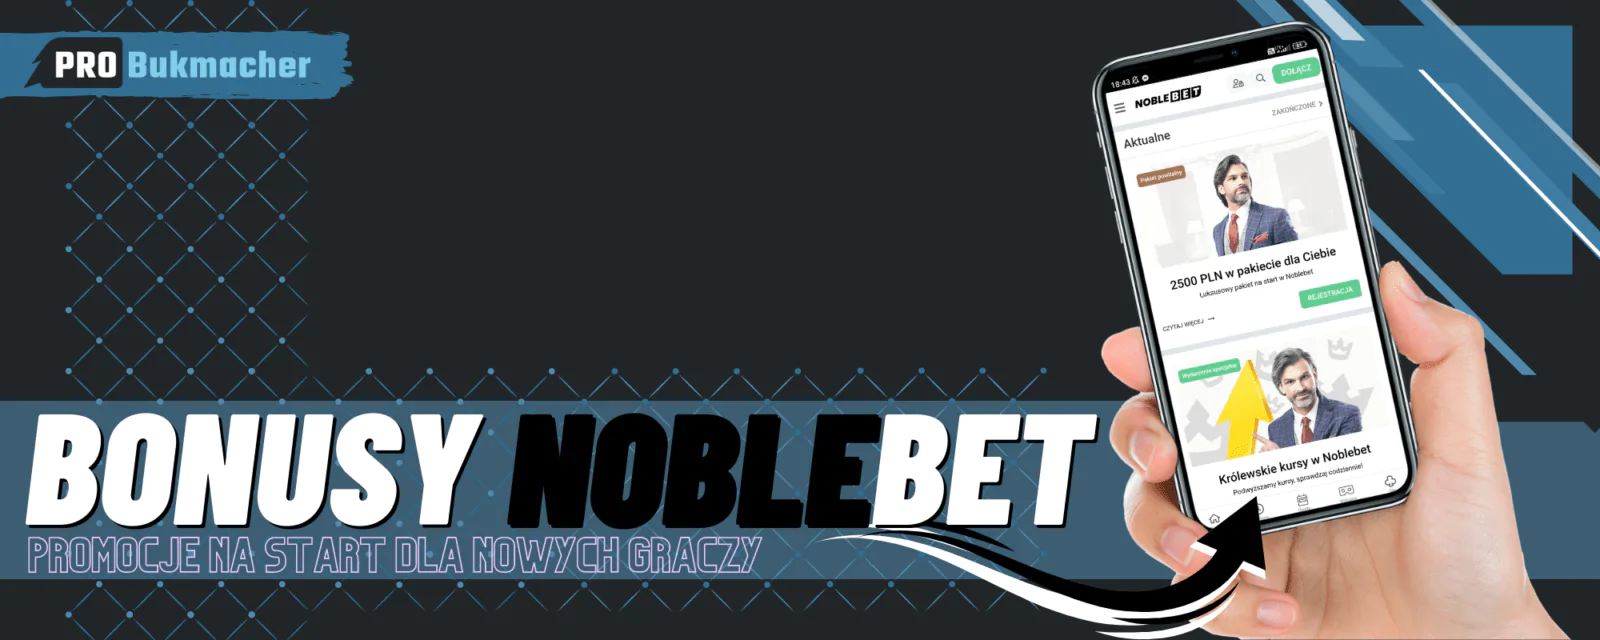 Bonusy dla nowych graczy u legalnego bukmachera Noblebet - sprawdź co przygotował bukmacher na start